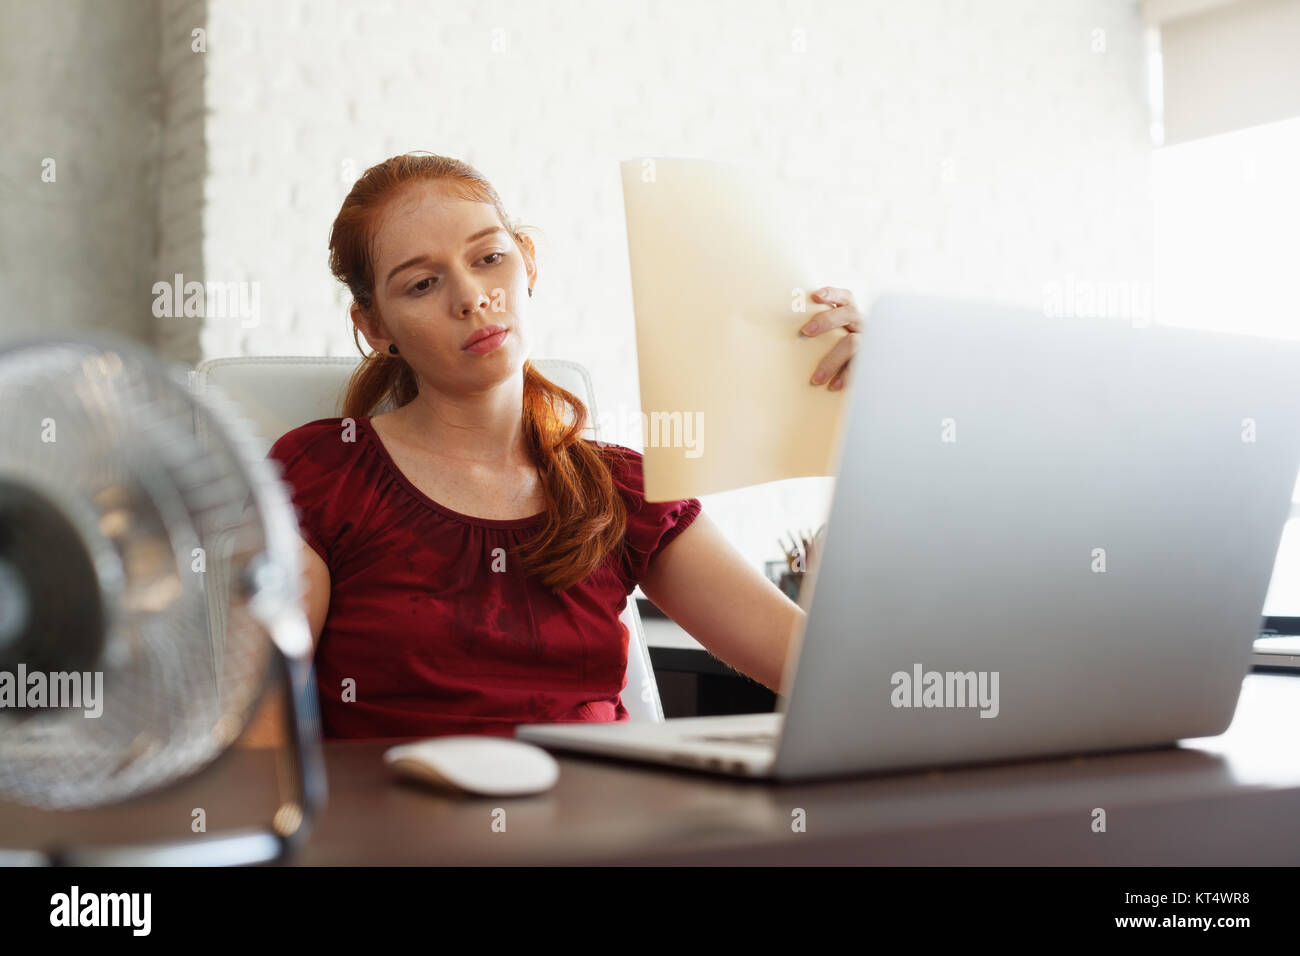 Portrait der junge rothaarige Frau arbeiten mit Computer Laptop im Büro im Sommer während der Hitzewelle. Die Temperatur ist heiß und das Haar Conditioner wird b Stockfoto